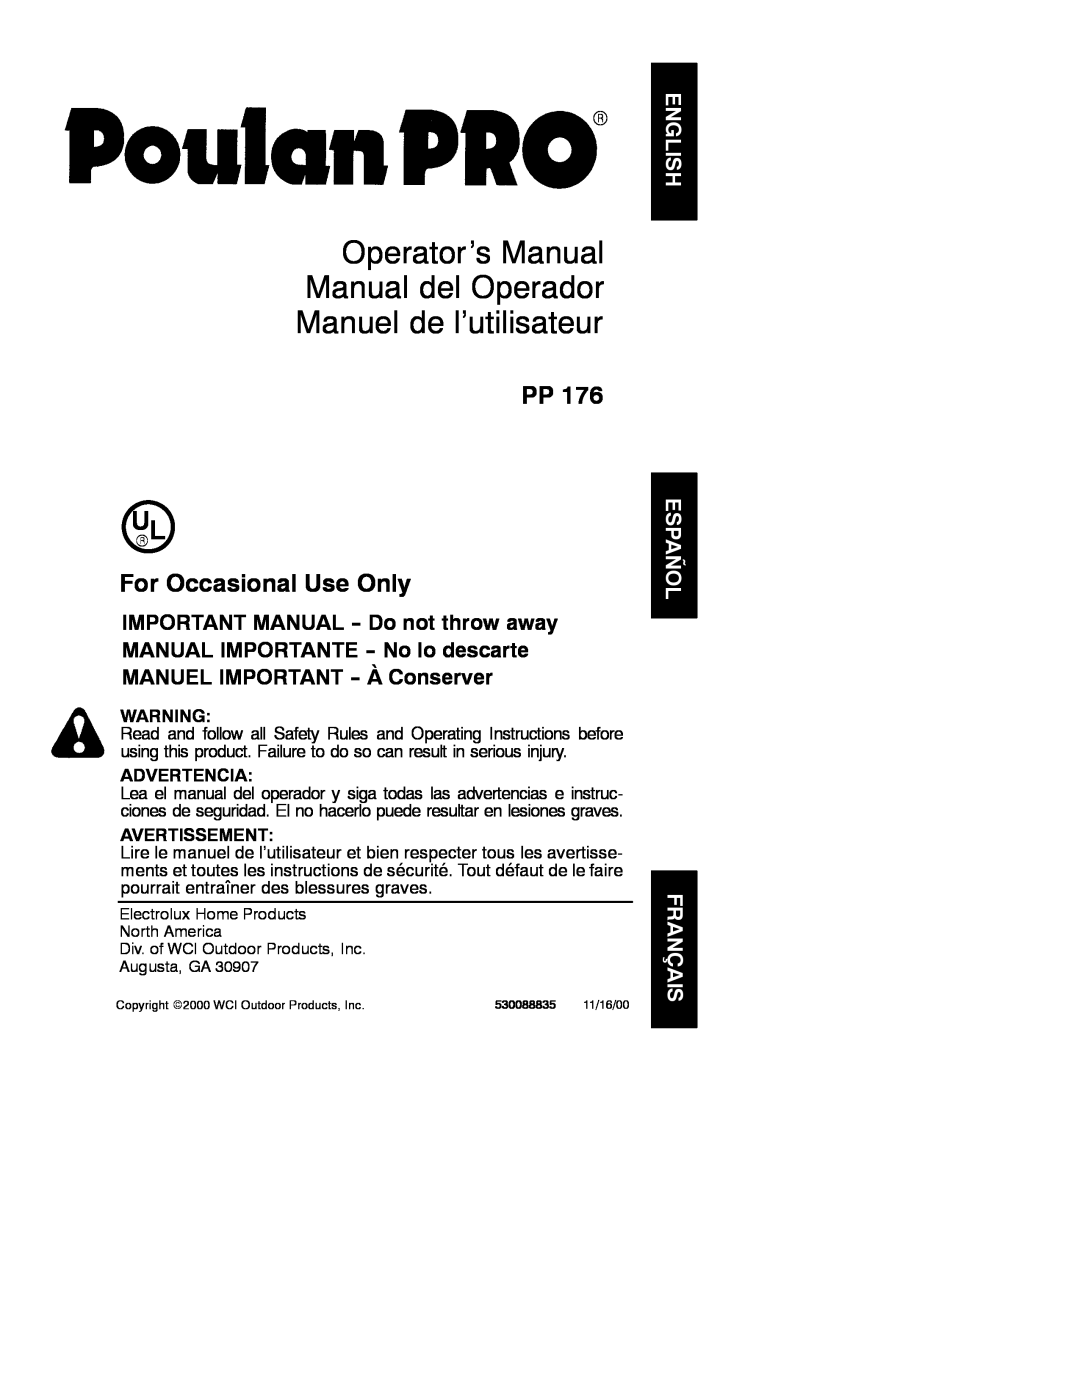 Poulan PP 176 operating instructions Operator’s Manual Manual del Operador Manuel de l’utilisateur, Advertencia 